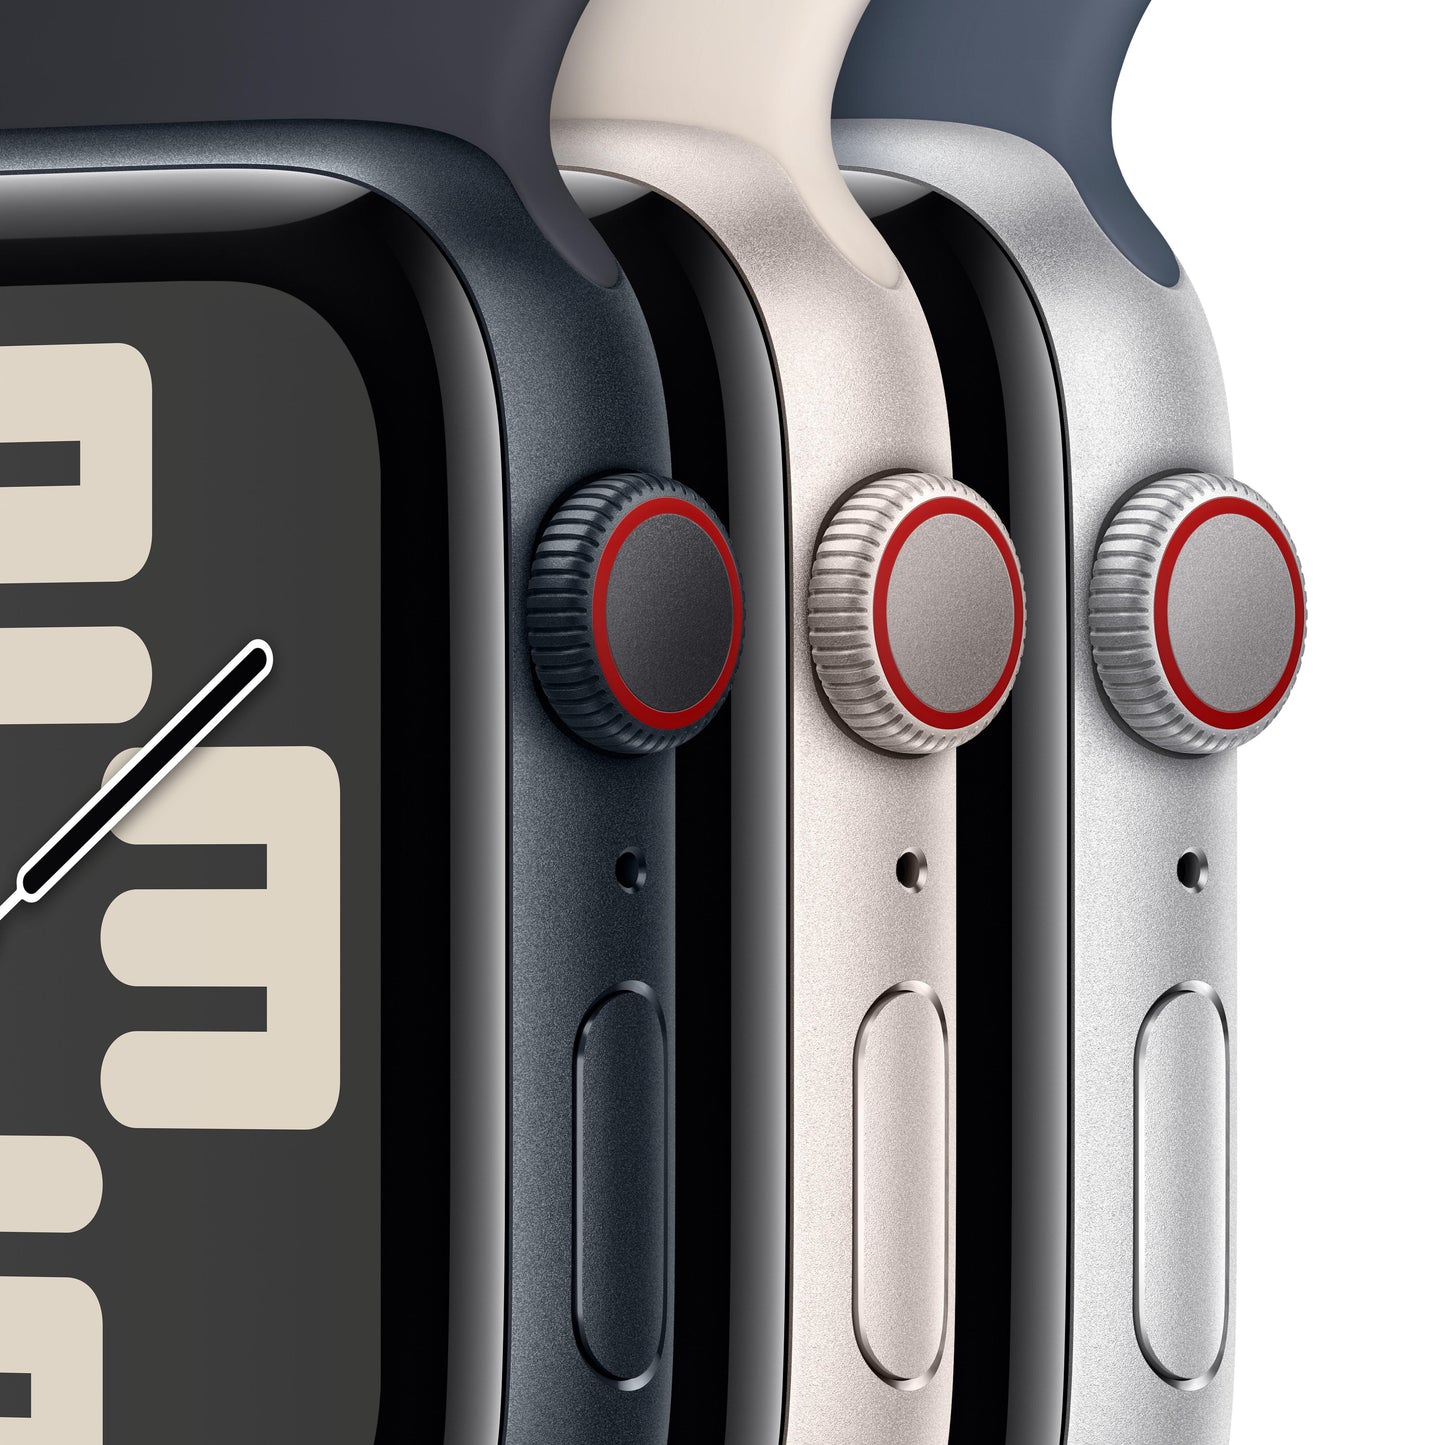 Apple Watch SE (GPS + Cellular) - Caja de aluminio en color medianoche de 44 mm - Correa deportiva color medianoche - Talla S/M